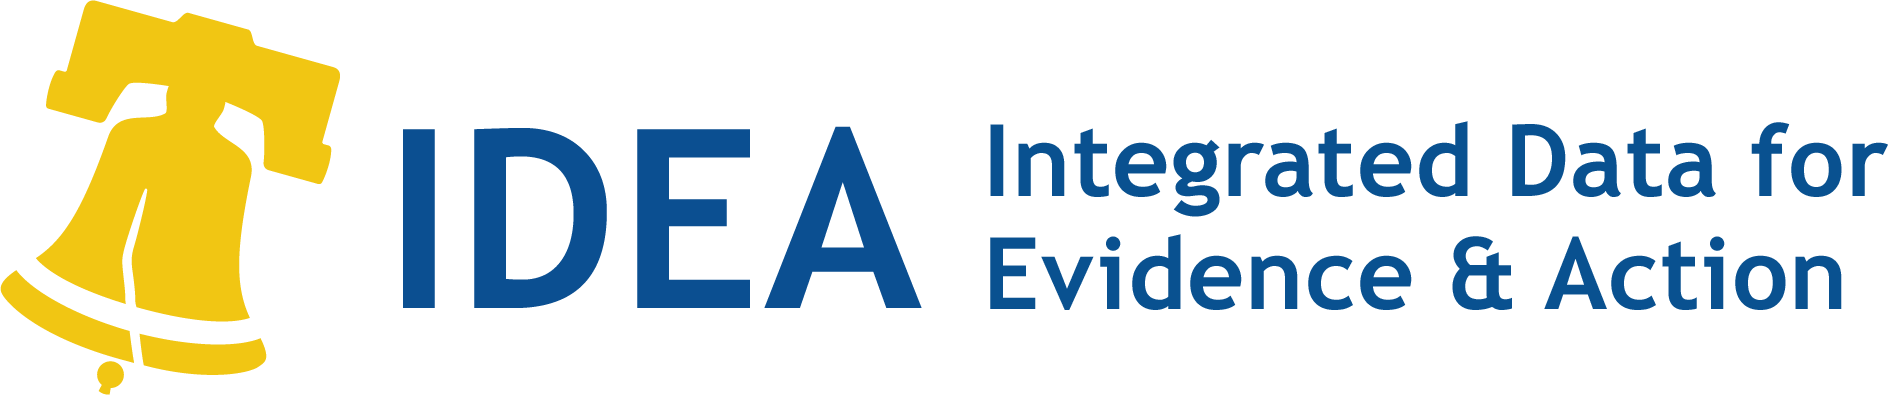 Logo cho Văn phòng Dữ liệu Tích hợp cho Bằng chứng và Hành động